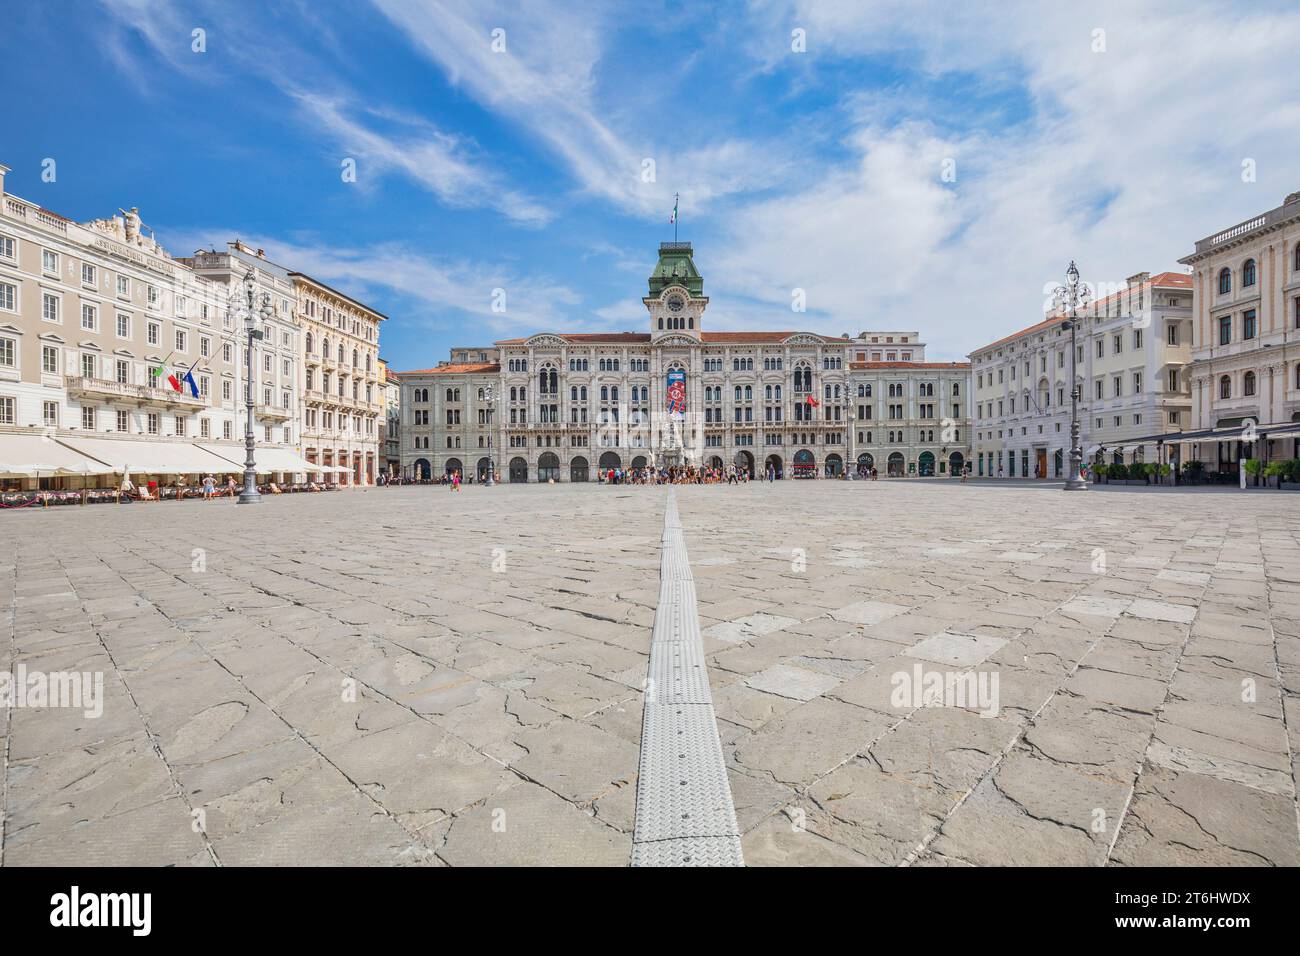 Italy, Friuli Venezia Giulia, Trieste, Piazza Unità d'Italia, the main square of Trieste Stock Photo